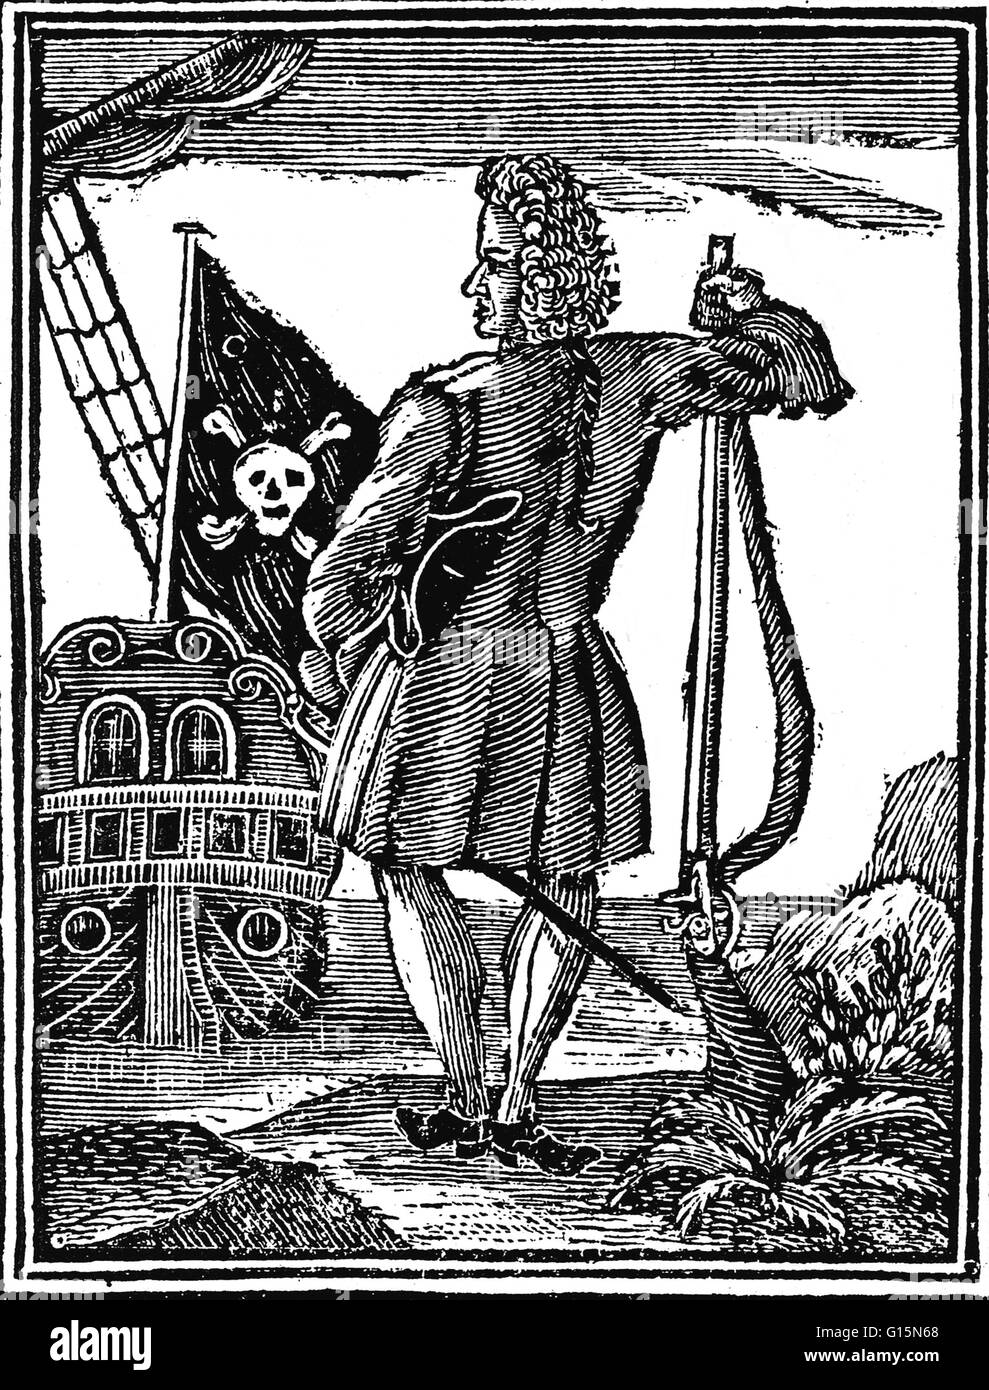 Gravur der Motorhaube von A General History of die Überfälle und Morde an der notorischsten Pyrates, 1725-Ausgabe. STEDE Bonnet (1688 - Dezember 10,1718) war ein englischer Pirat in Barbados geboren. Er erhielt den Spitznamen "der Gentleman-Pirat", weil er hatte sein Stockfoto